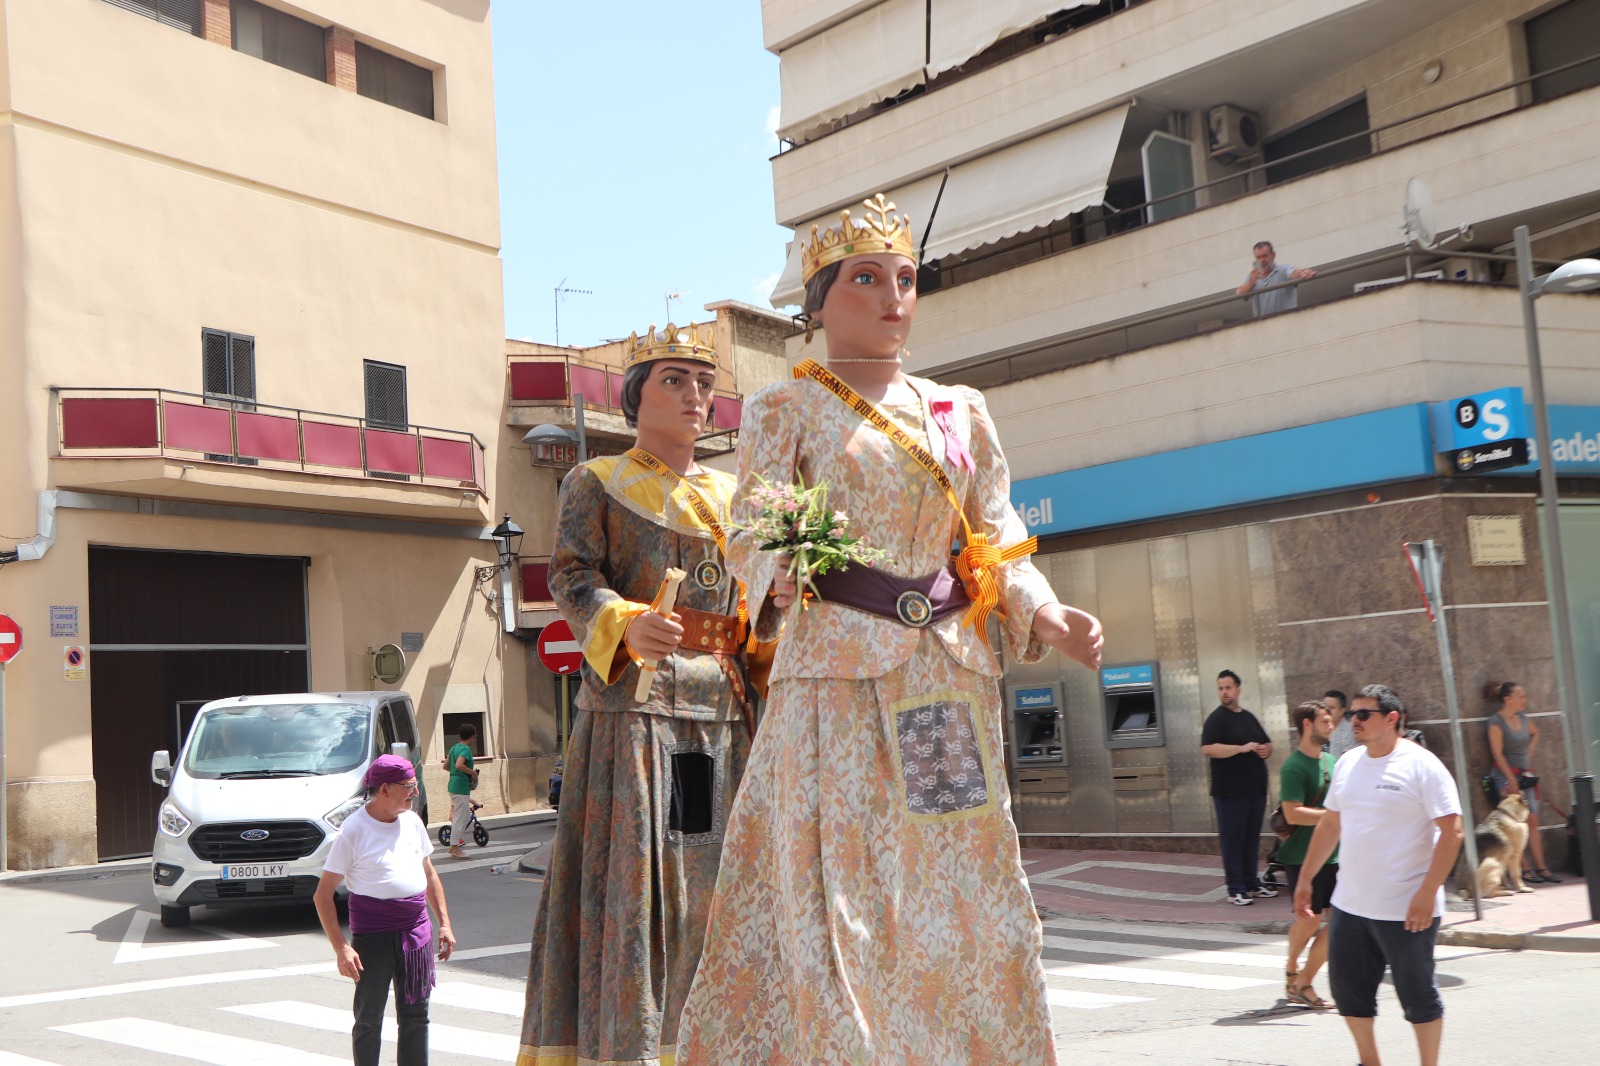 Imatge dels gegants vells d'Olesa trets a passejar per les Matinades de Festa Major